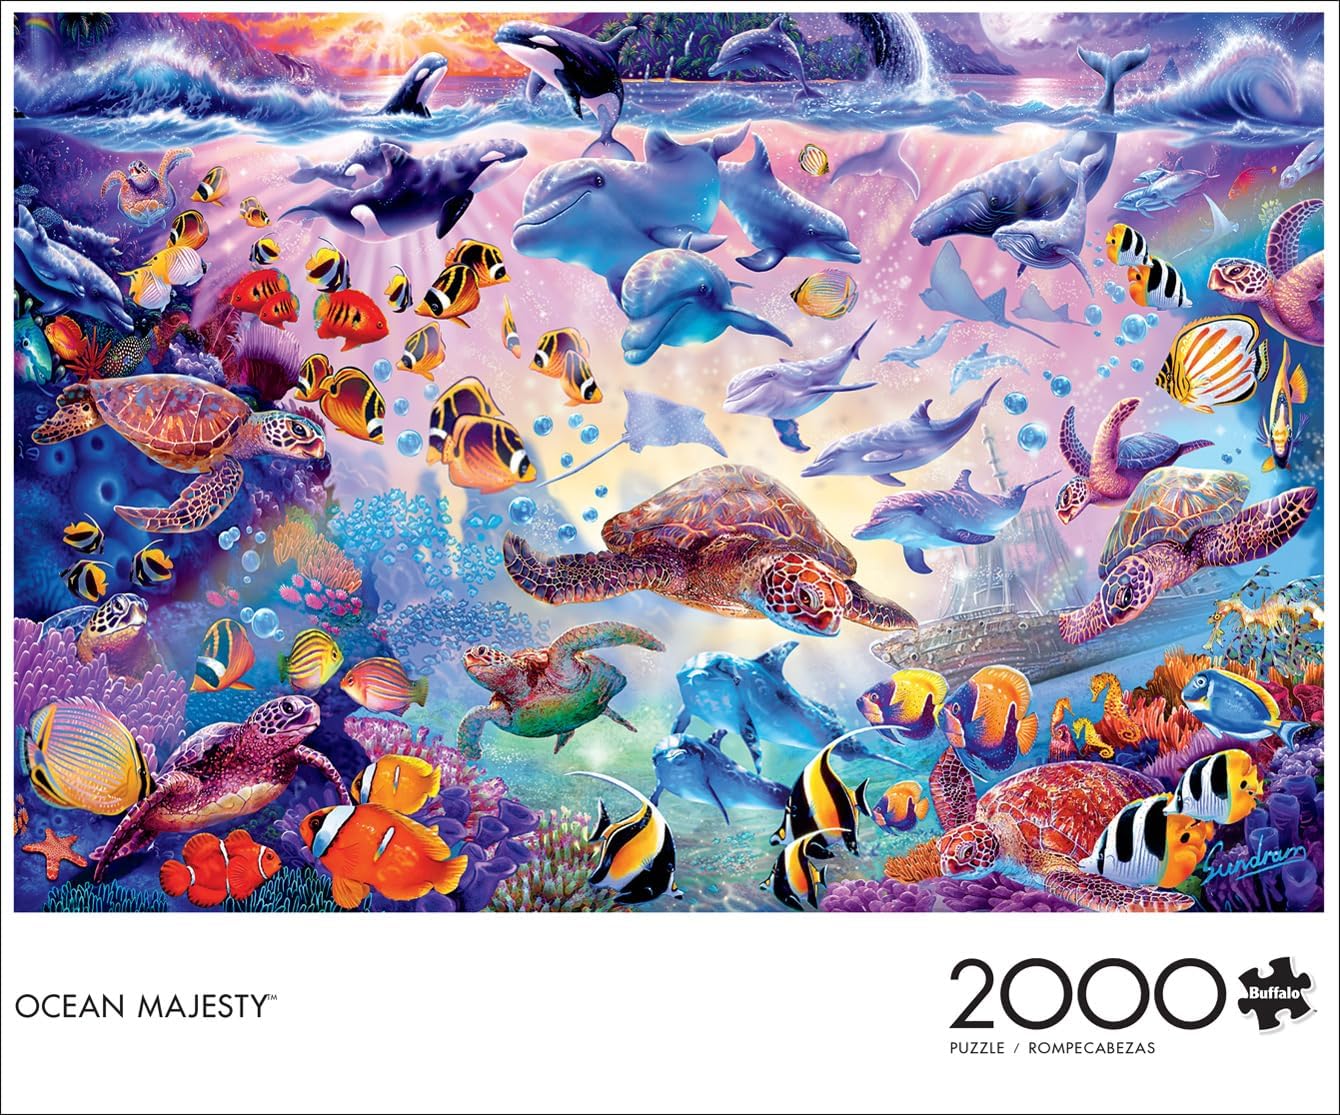 Ocean Majesty - 2000 Piece Jigsaw Puzzle